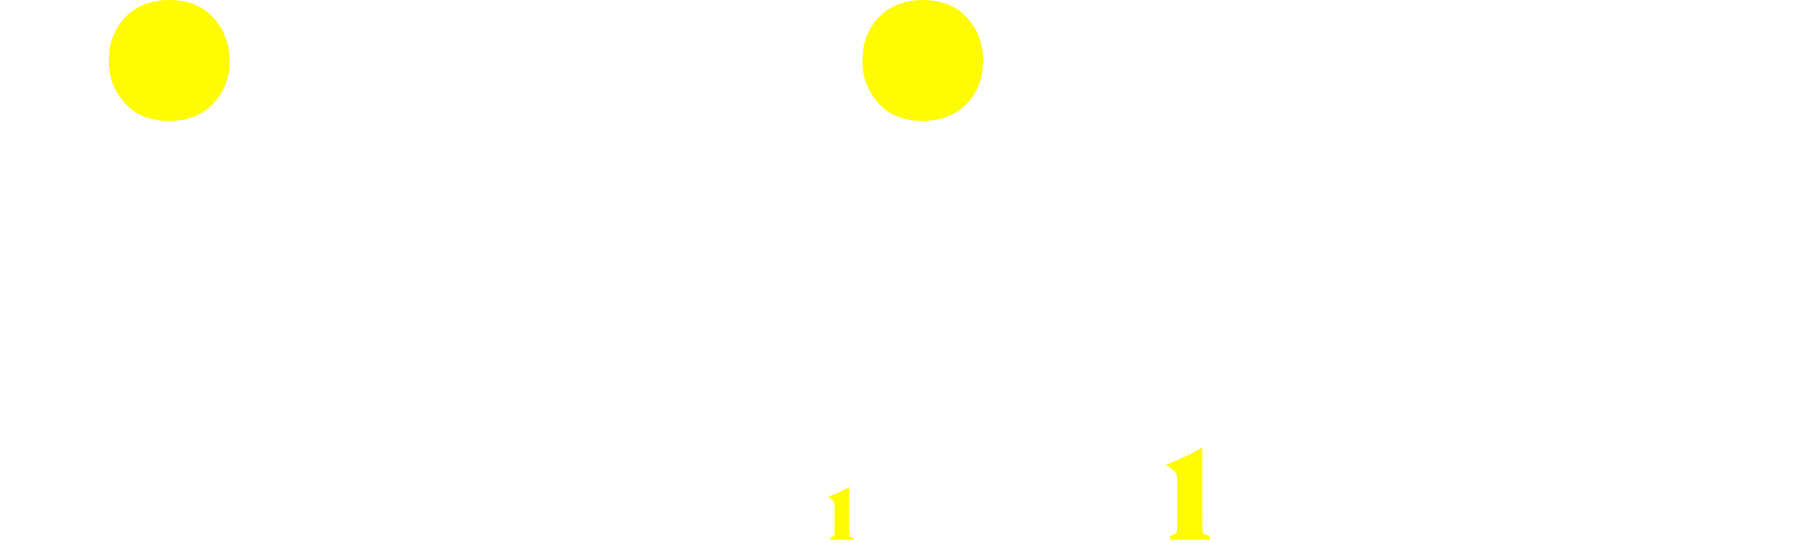 Julieta - Un film de Almodóvar